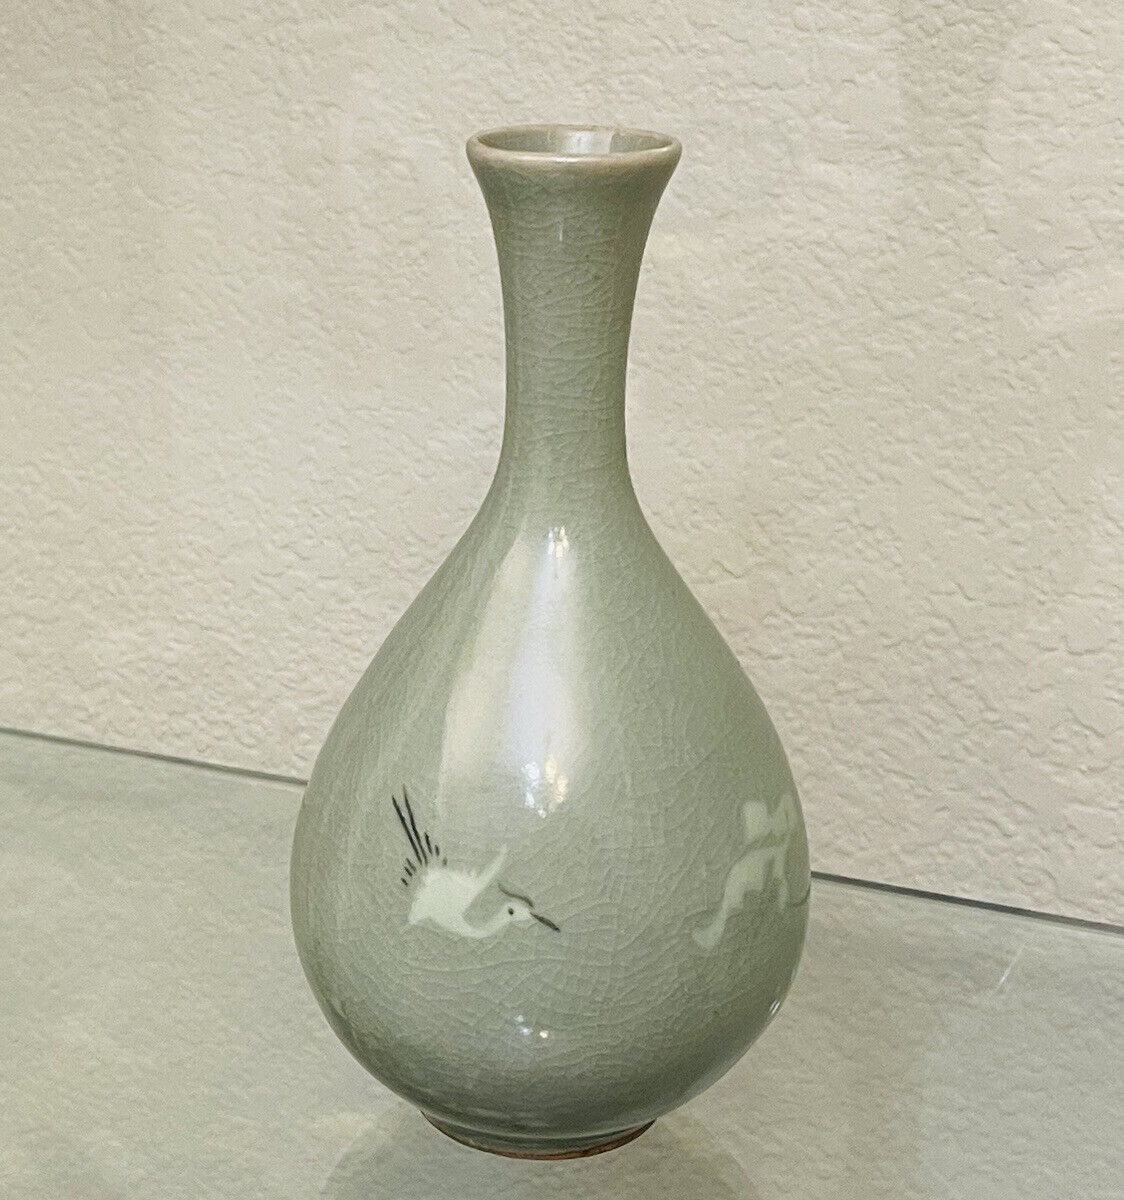 Oriental Crackled Celadon Glazed Cranes In Flight Bud Vase or Decanter 6.5\